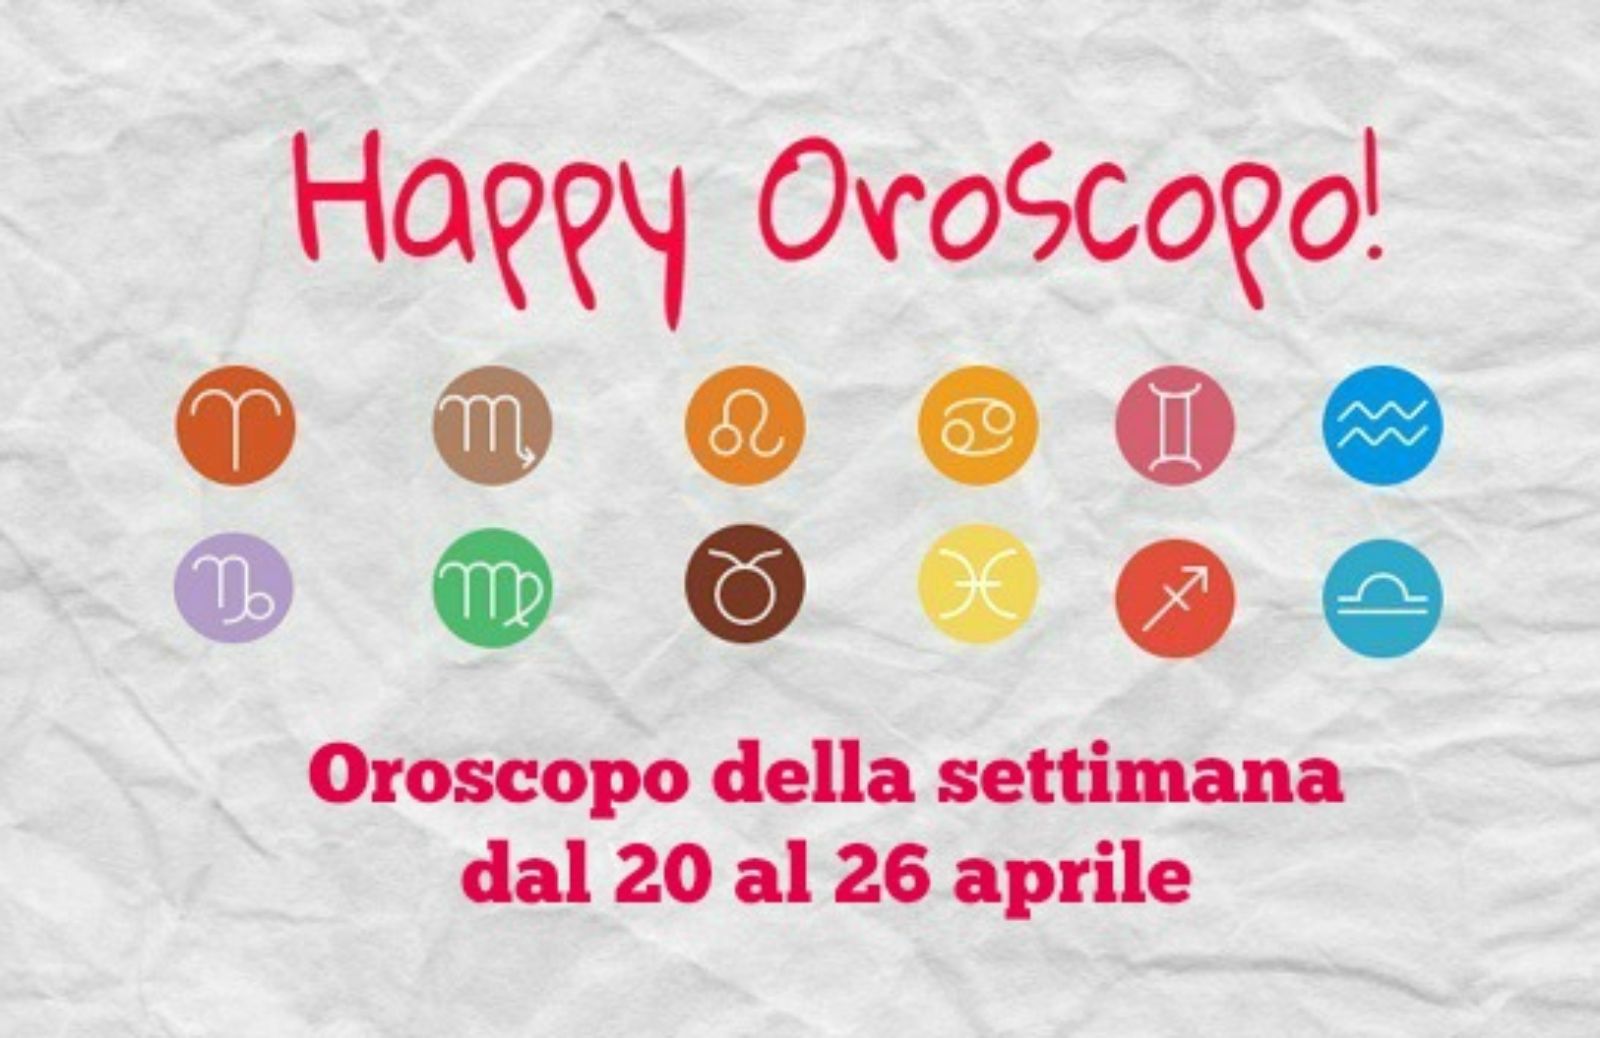 Happy Oroscopo della settimana: cosa dicono le stelle dal 20 al 26 aprile